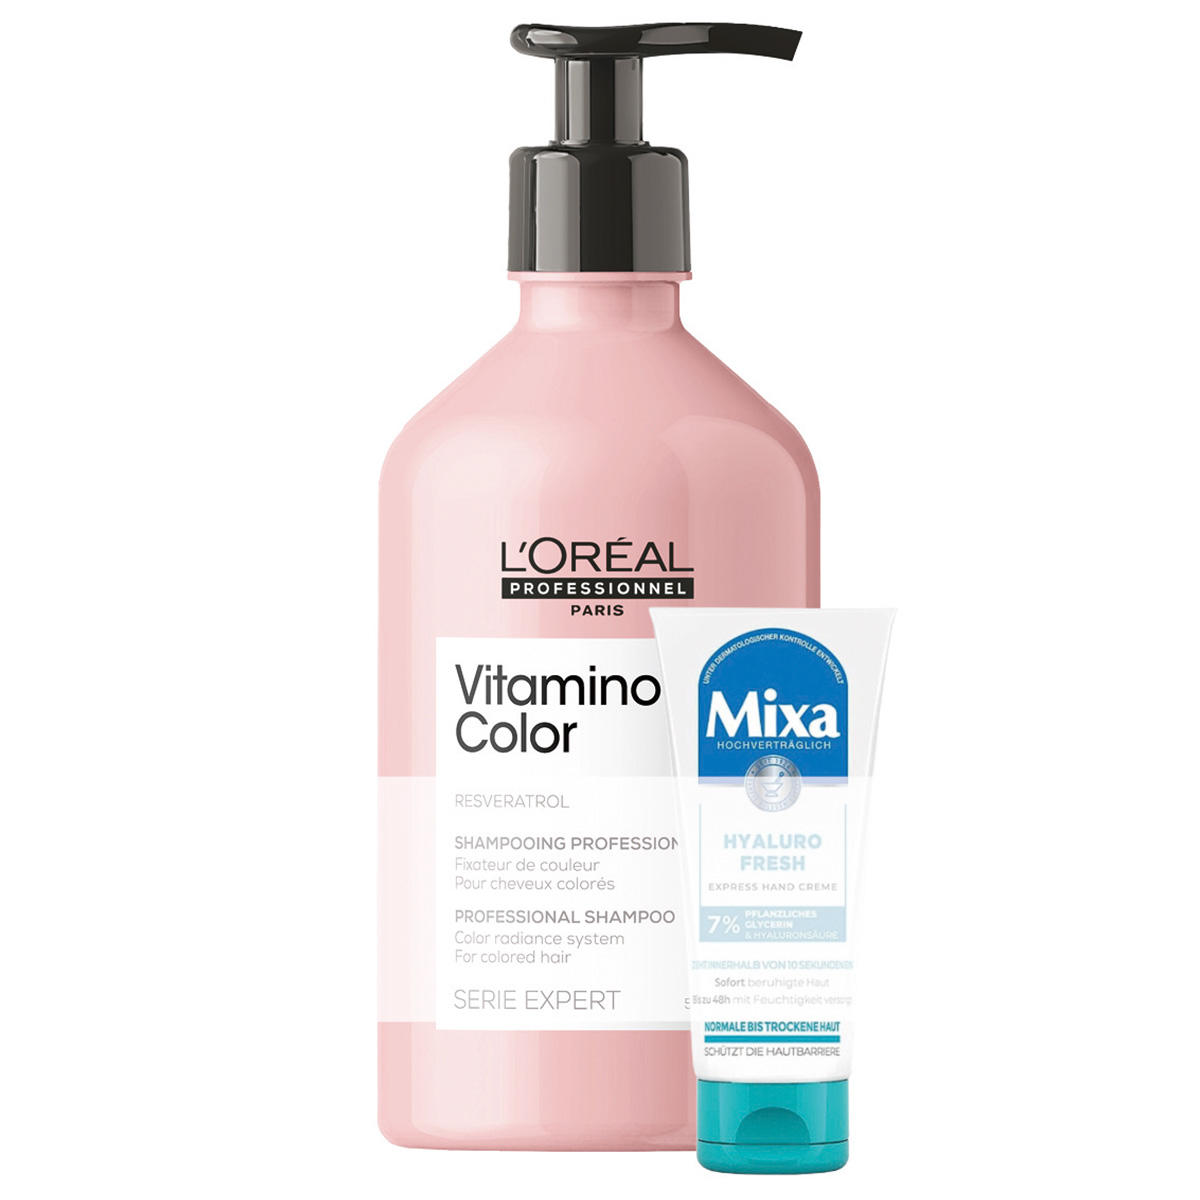 L'Oréal Professionnel Paris Serie Expert Vitamino Color Professional Shampoo 500 ml + Geschenk - 1